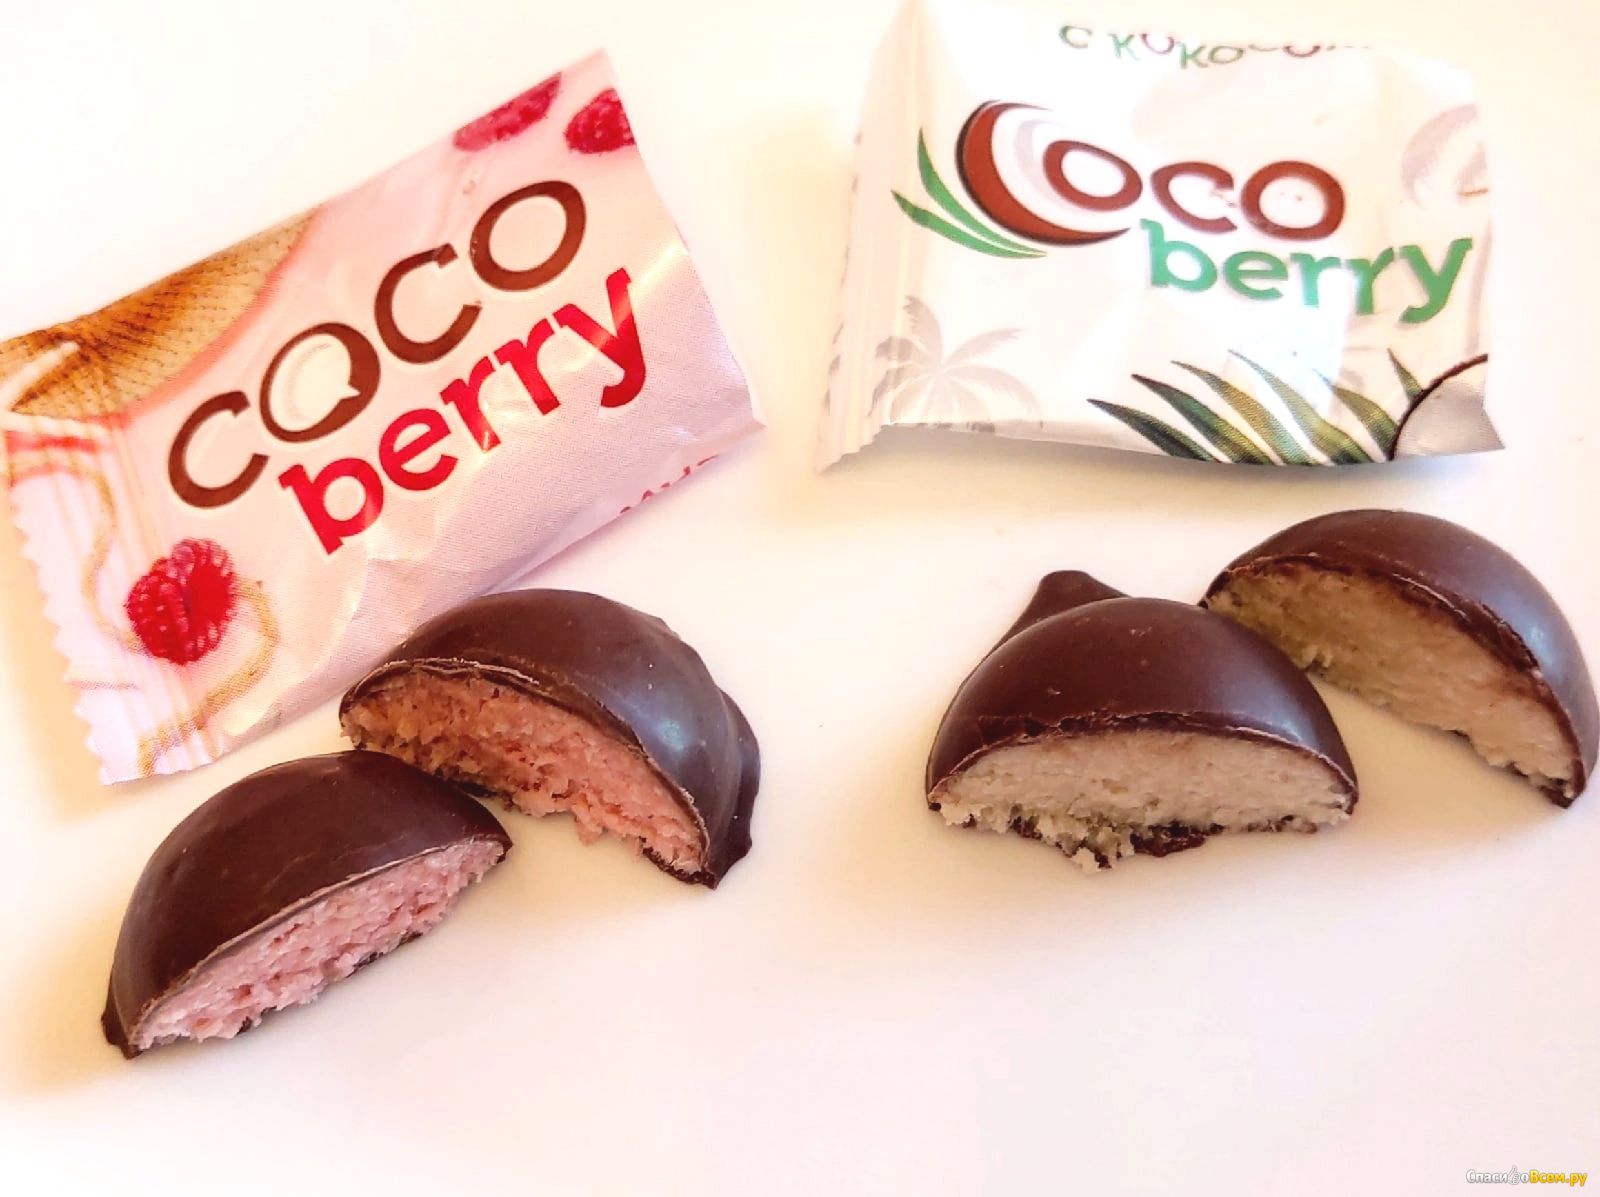 Конфетис. Coco Berry конфеты фикс. Кокосовые конфеты. Конфеты Coco Berry Кокос малина. Слада конфеты.